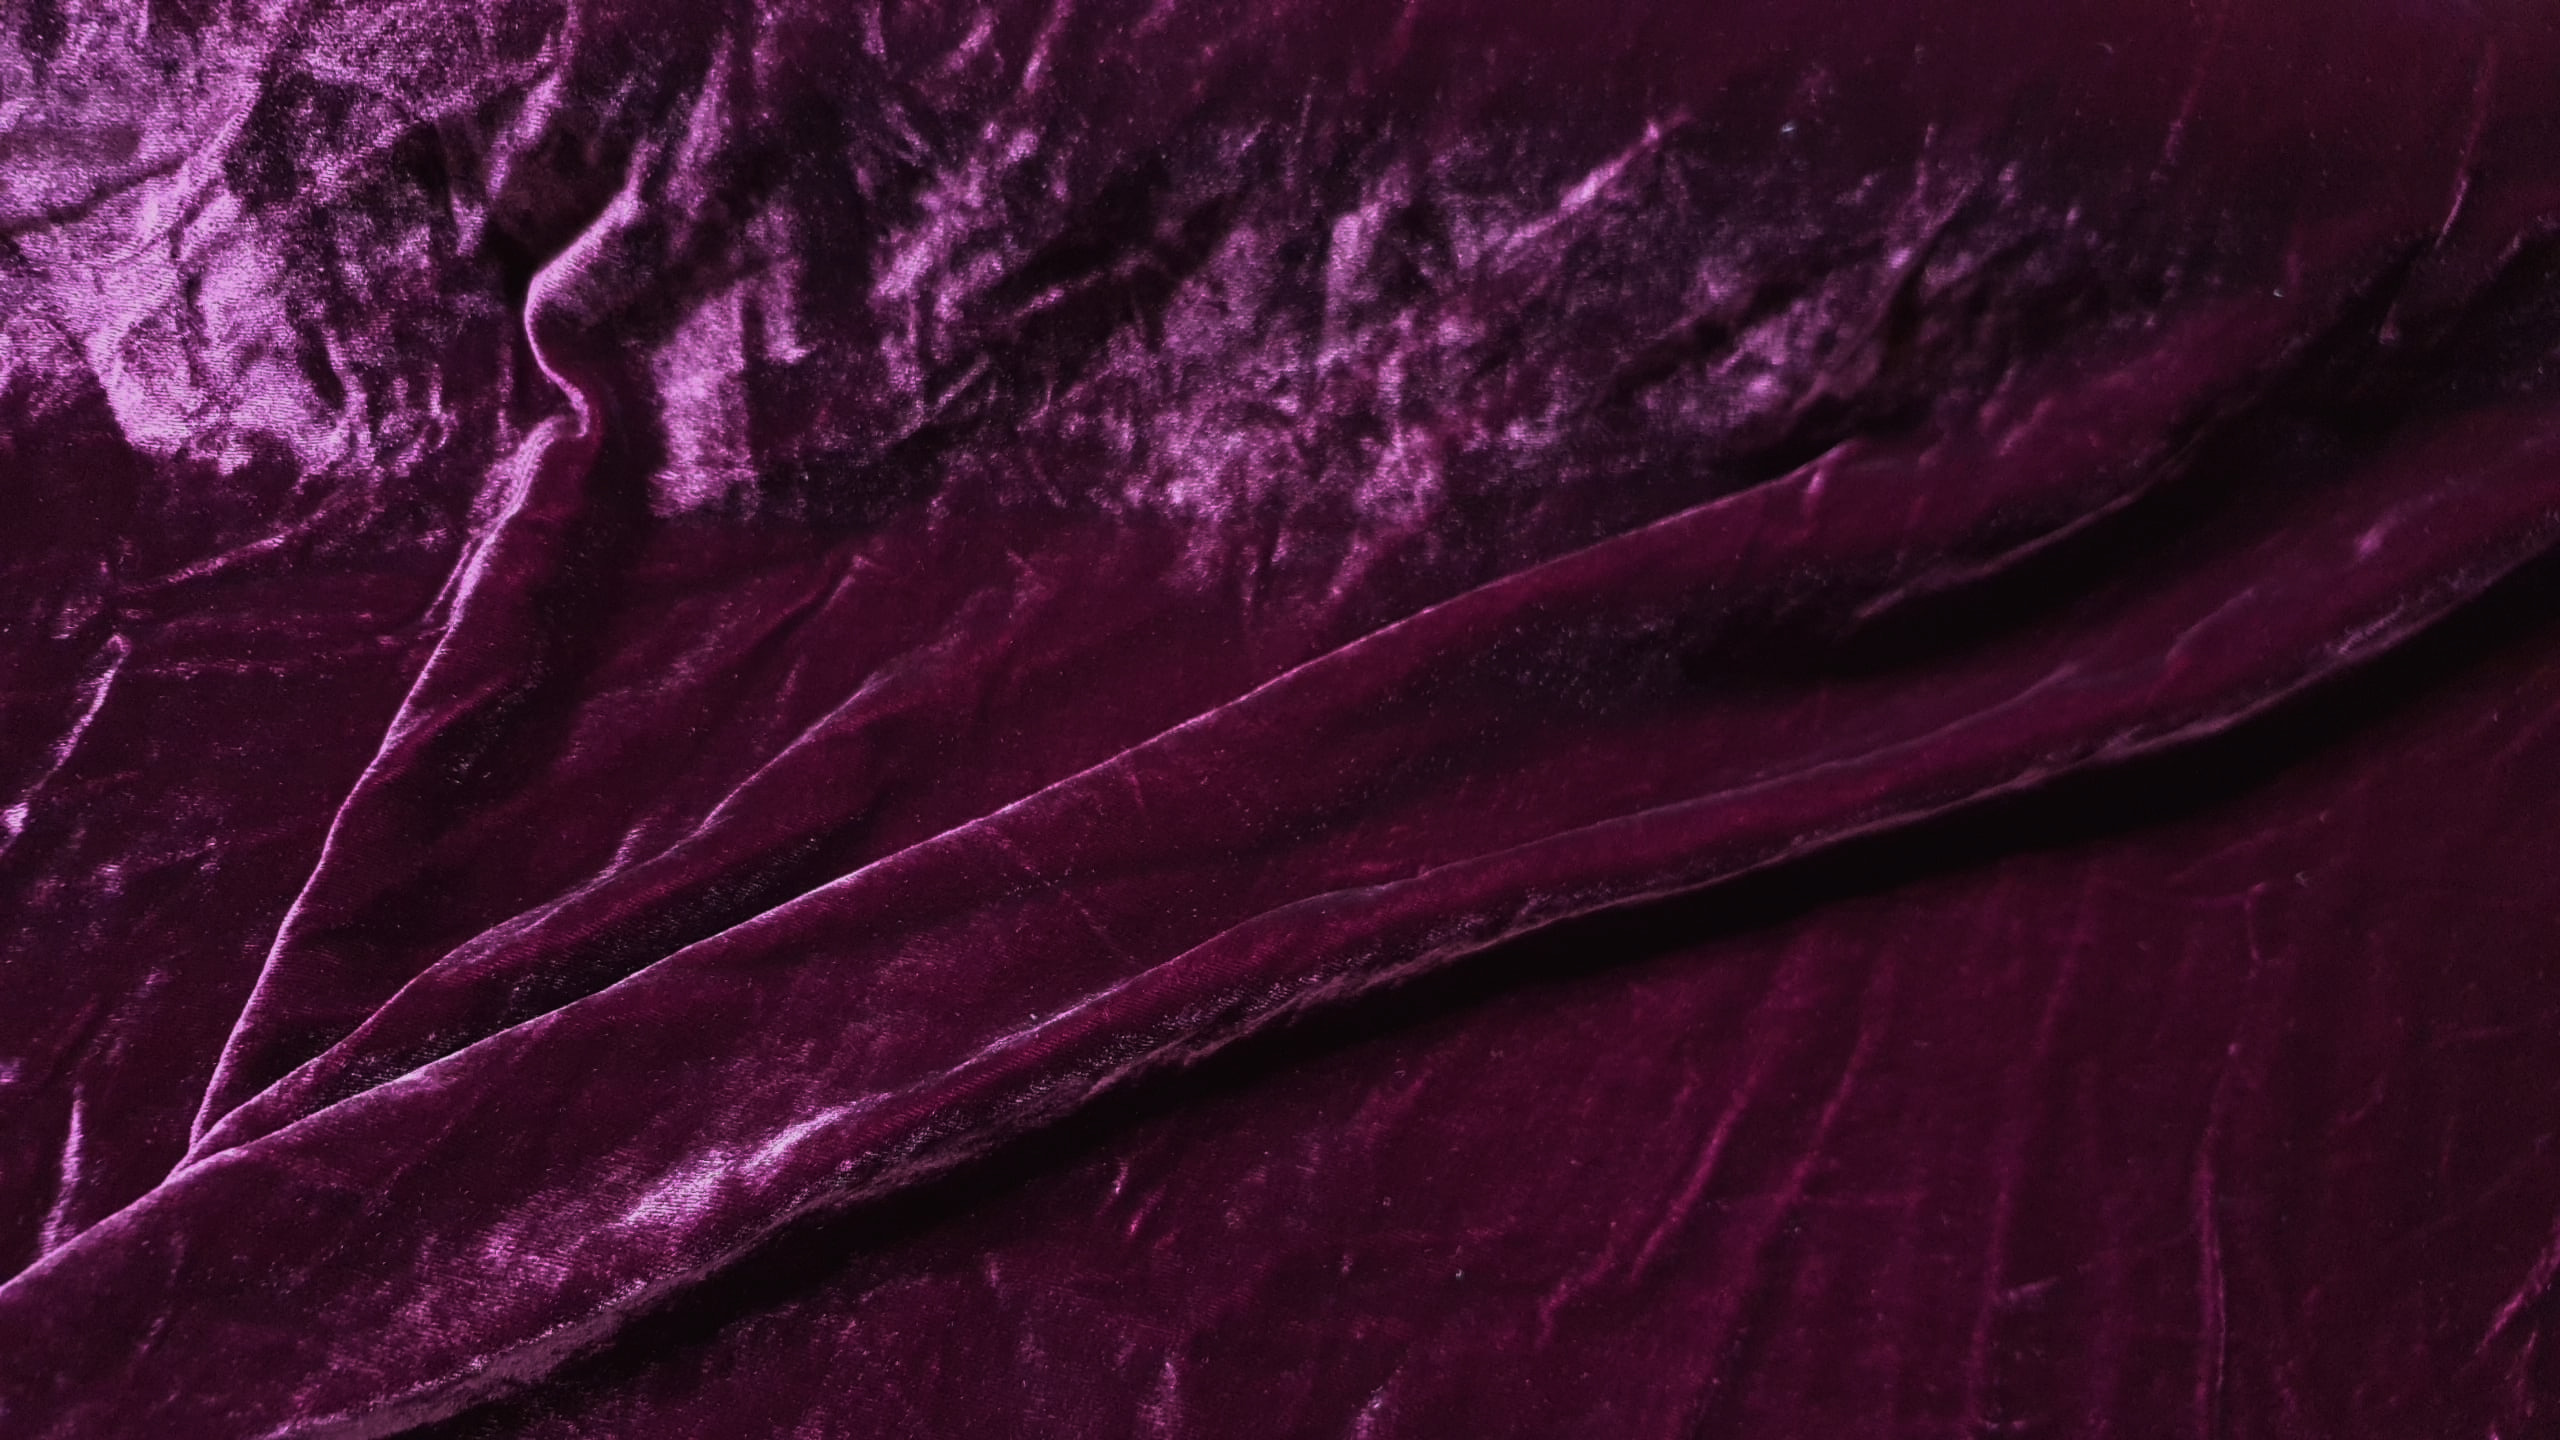 Silk Velvet-Dark purple